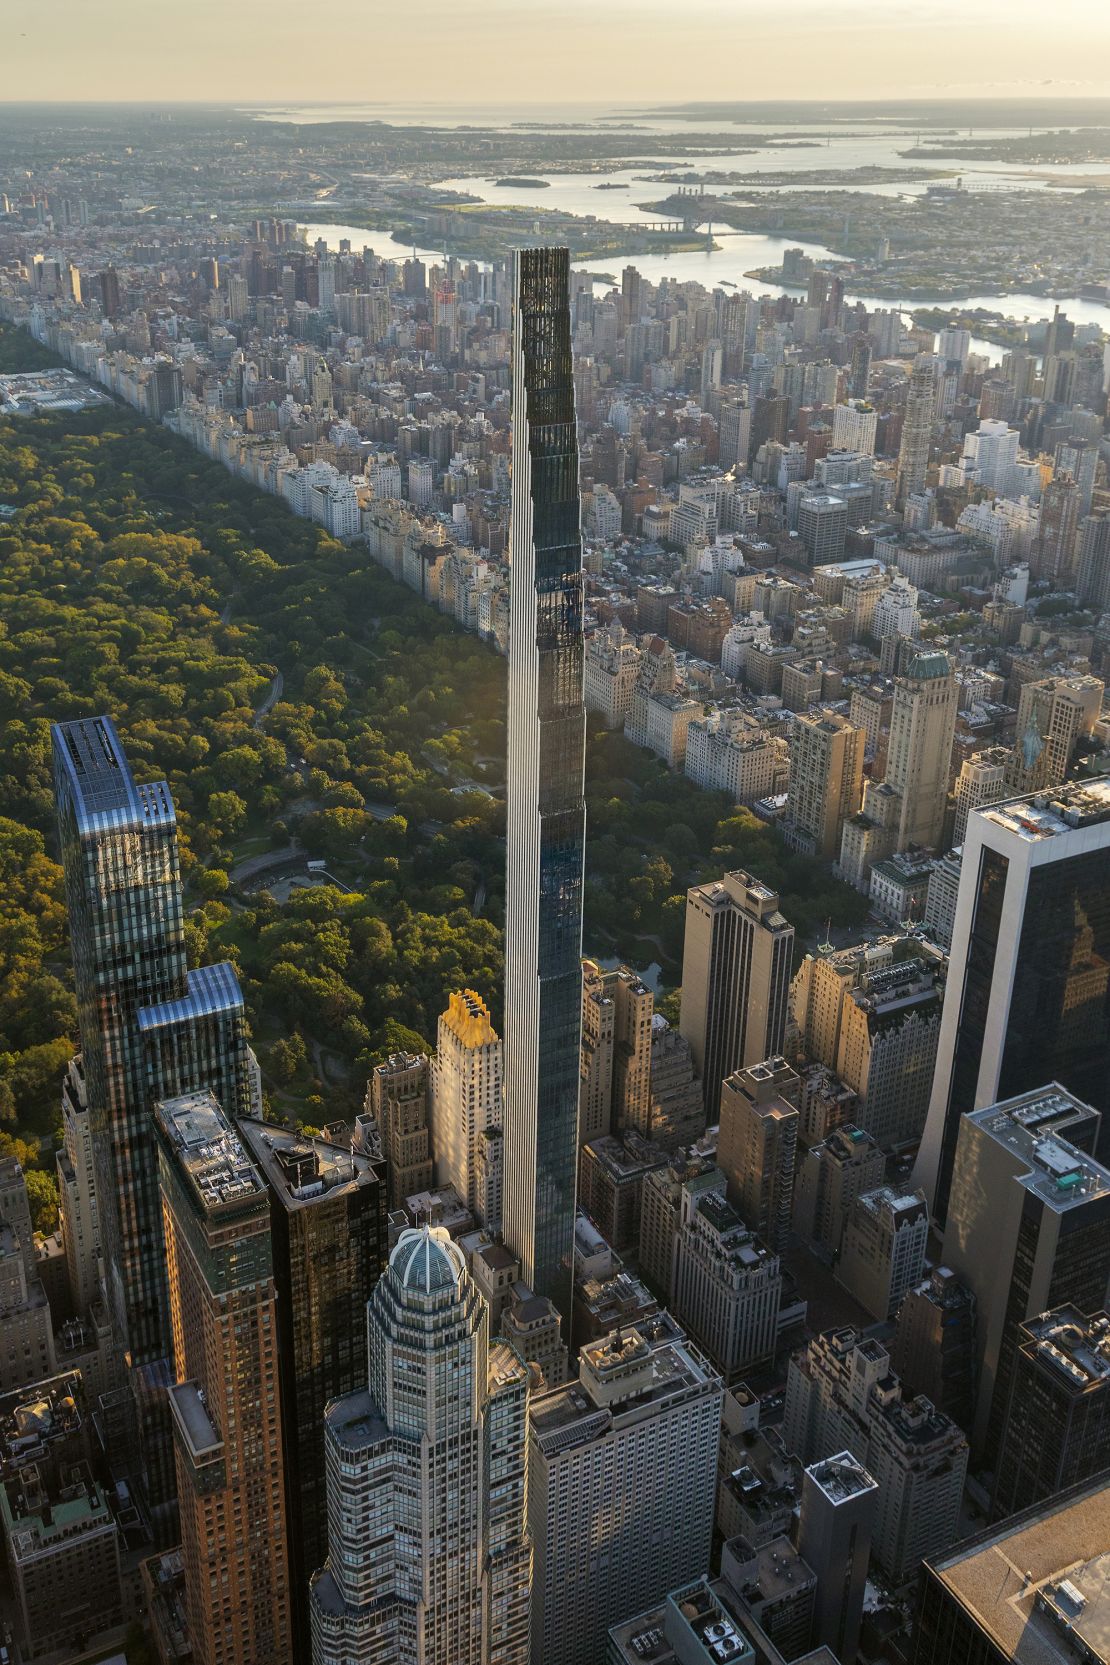 The Steinway Tower reaches 1,428 feet tall.